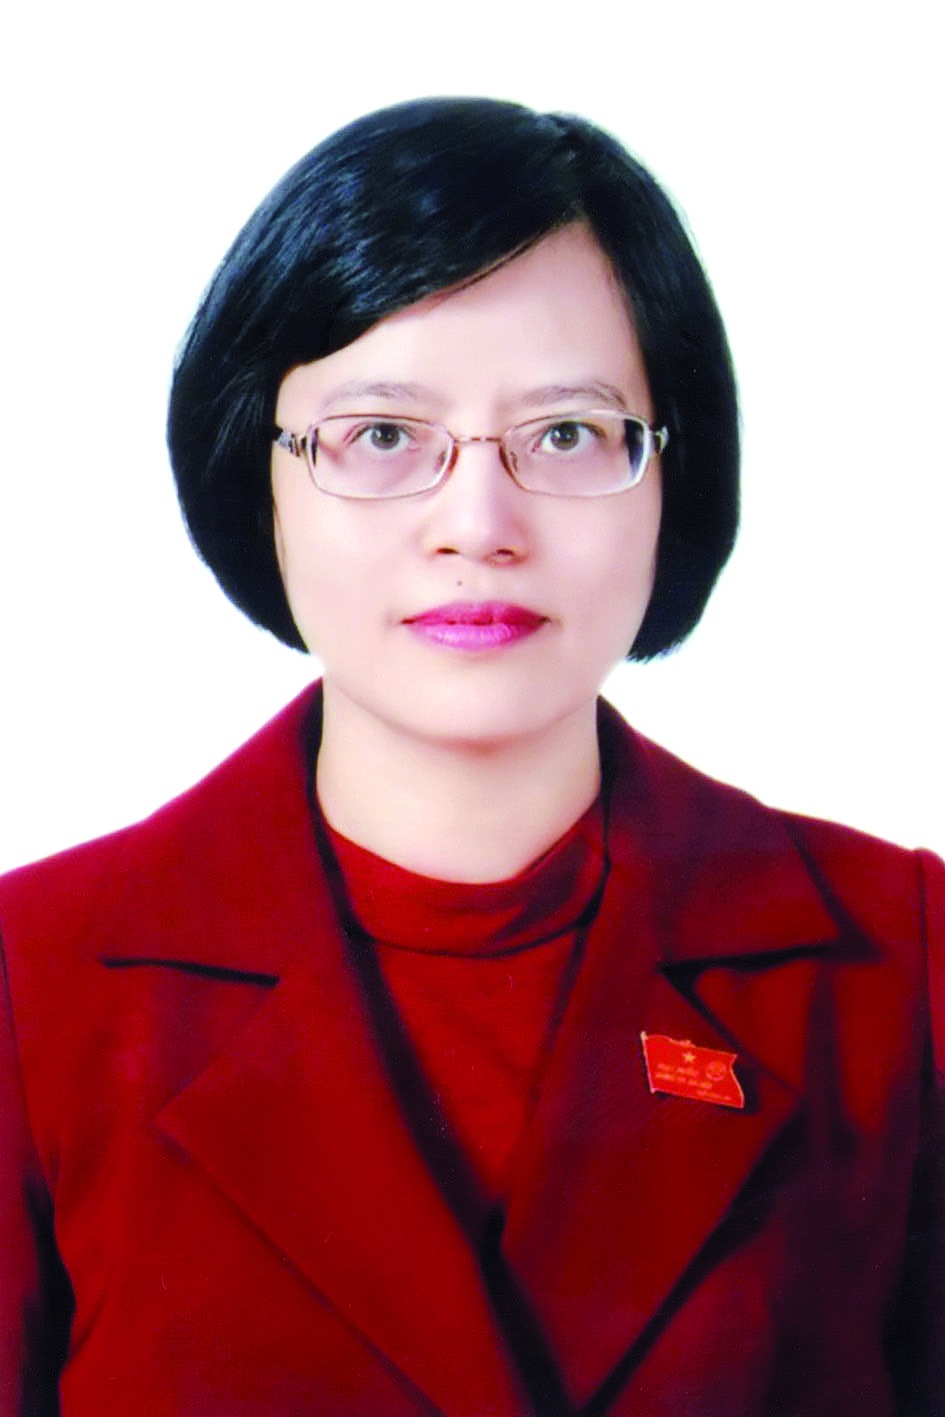 Chương trình hành động của bà Hồ Vân Nga, ứng cử viên đại biểu HĐND TP Hà Nội nhiệm kỳ 2021 - 2026 - Ảnh 1